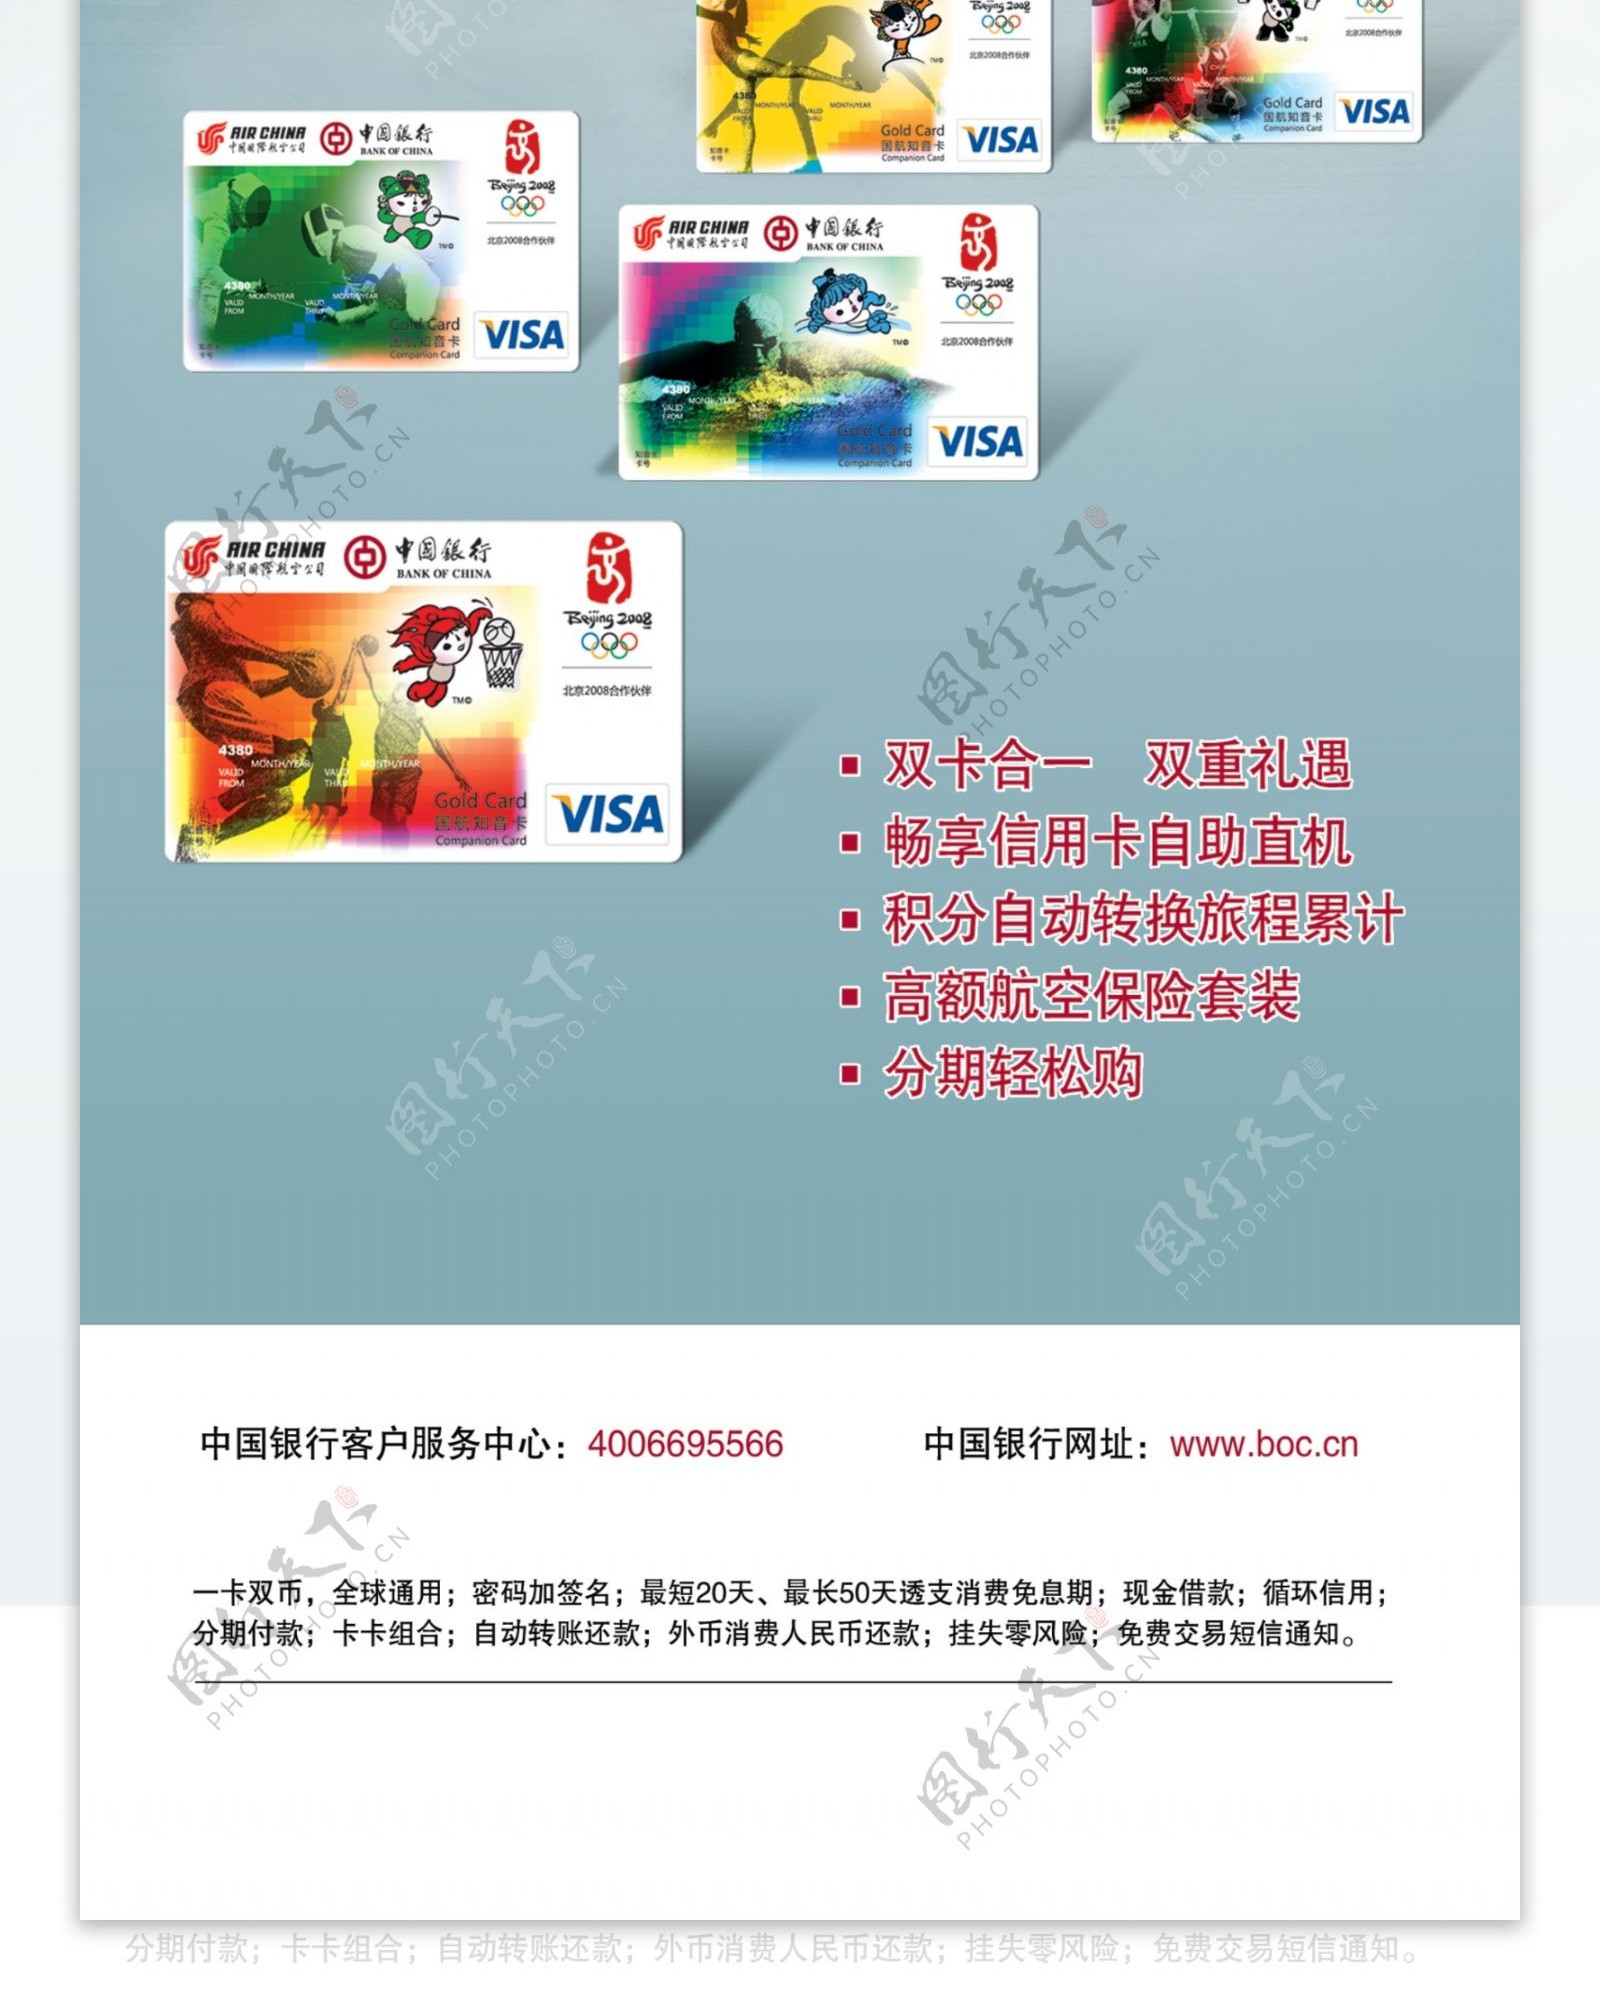 中国银行国航知音卡图片